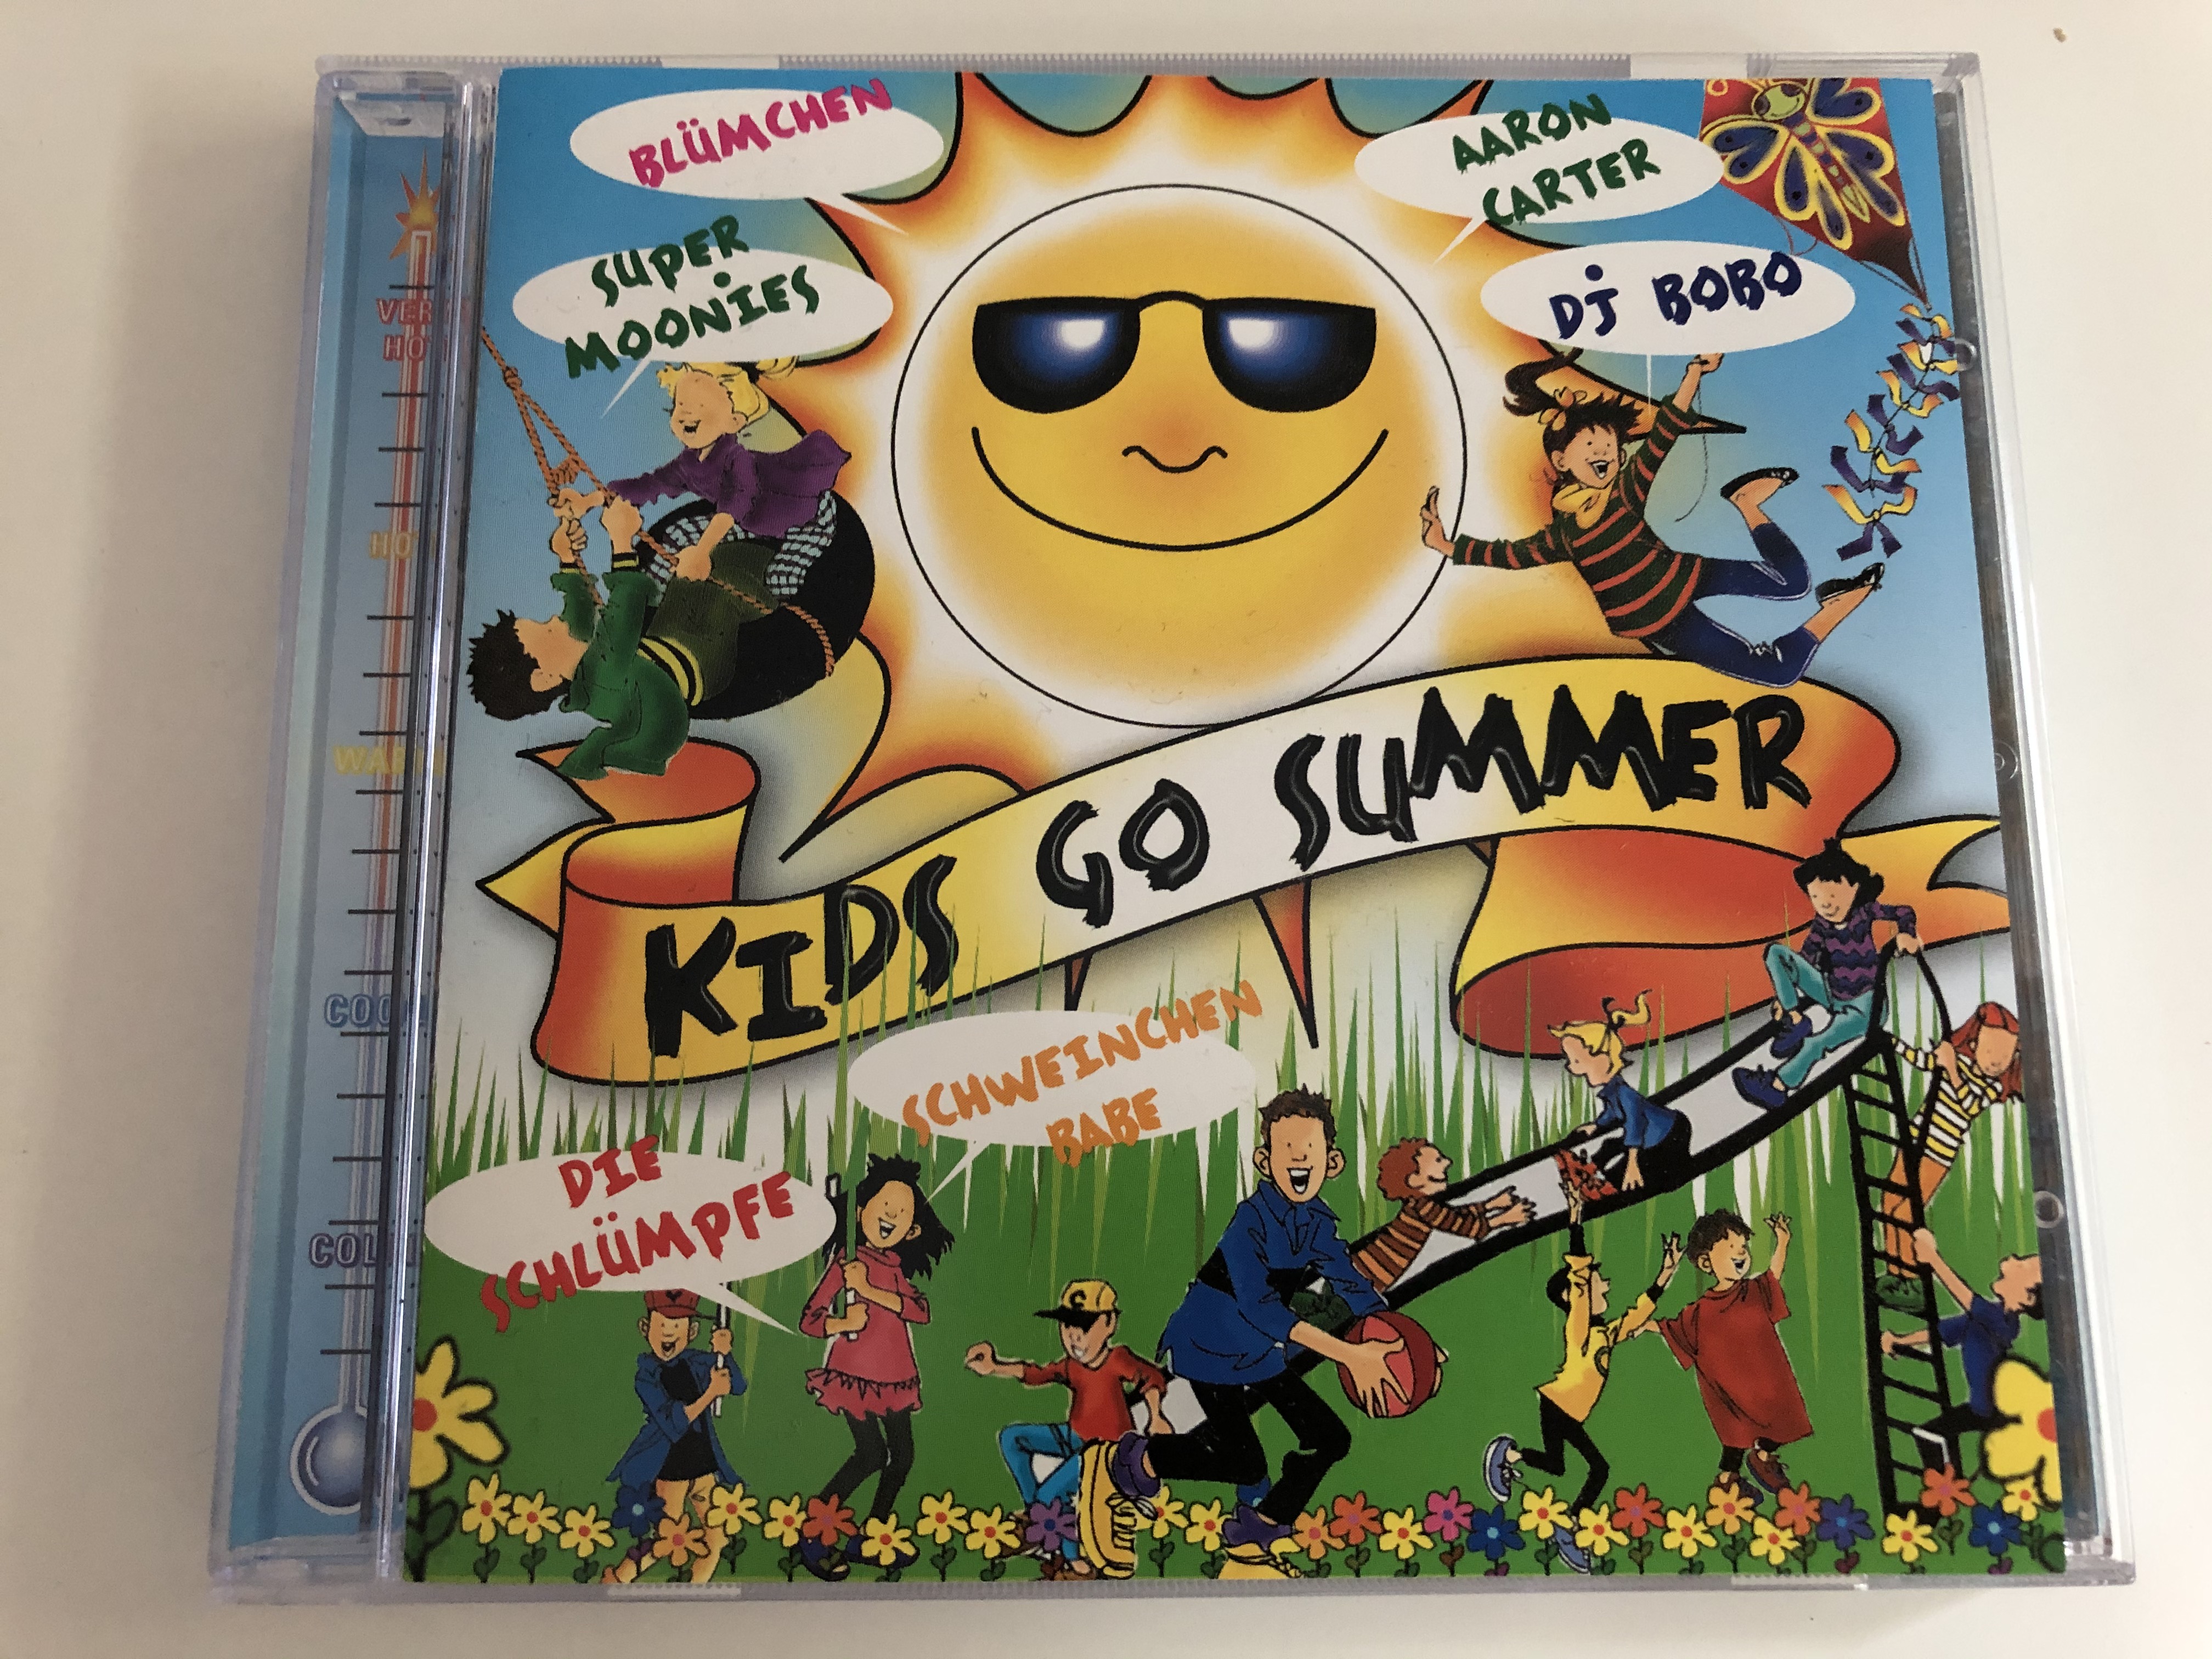 kids-go-summer-blumchen-super-moonies-aaron-carter-dj-bobo-die-schlumpfe-schweinchen-babe-edel-audio-cd-1999-0047352ere-1-.jpg